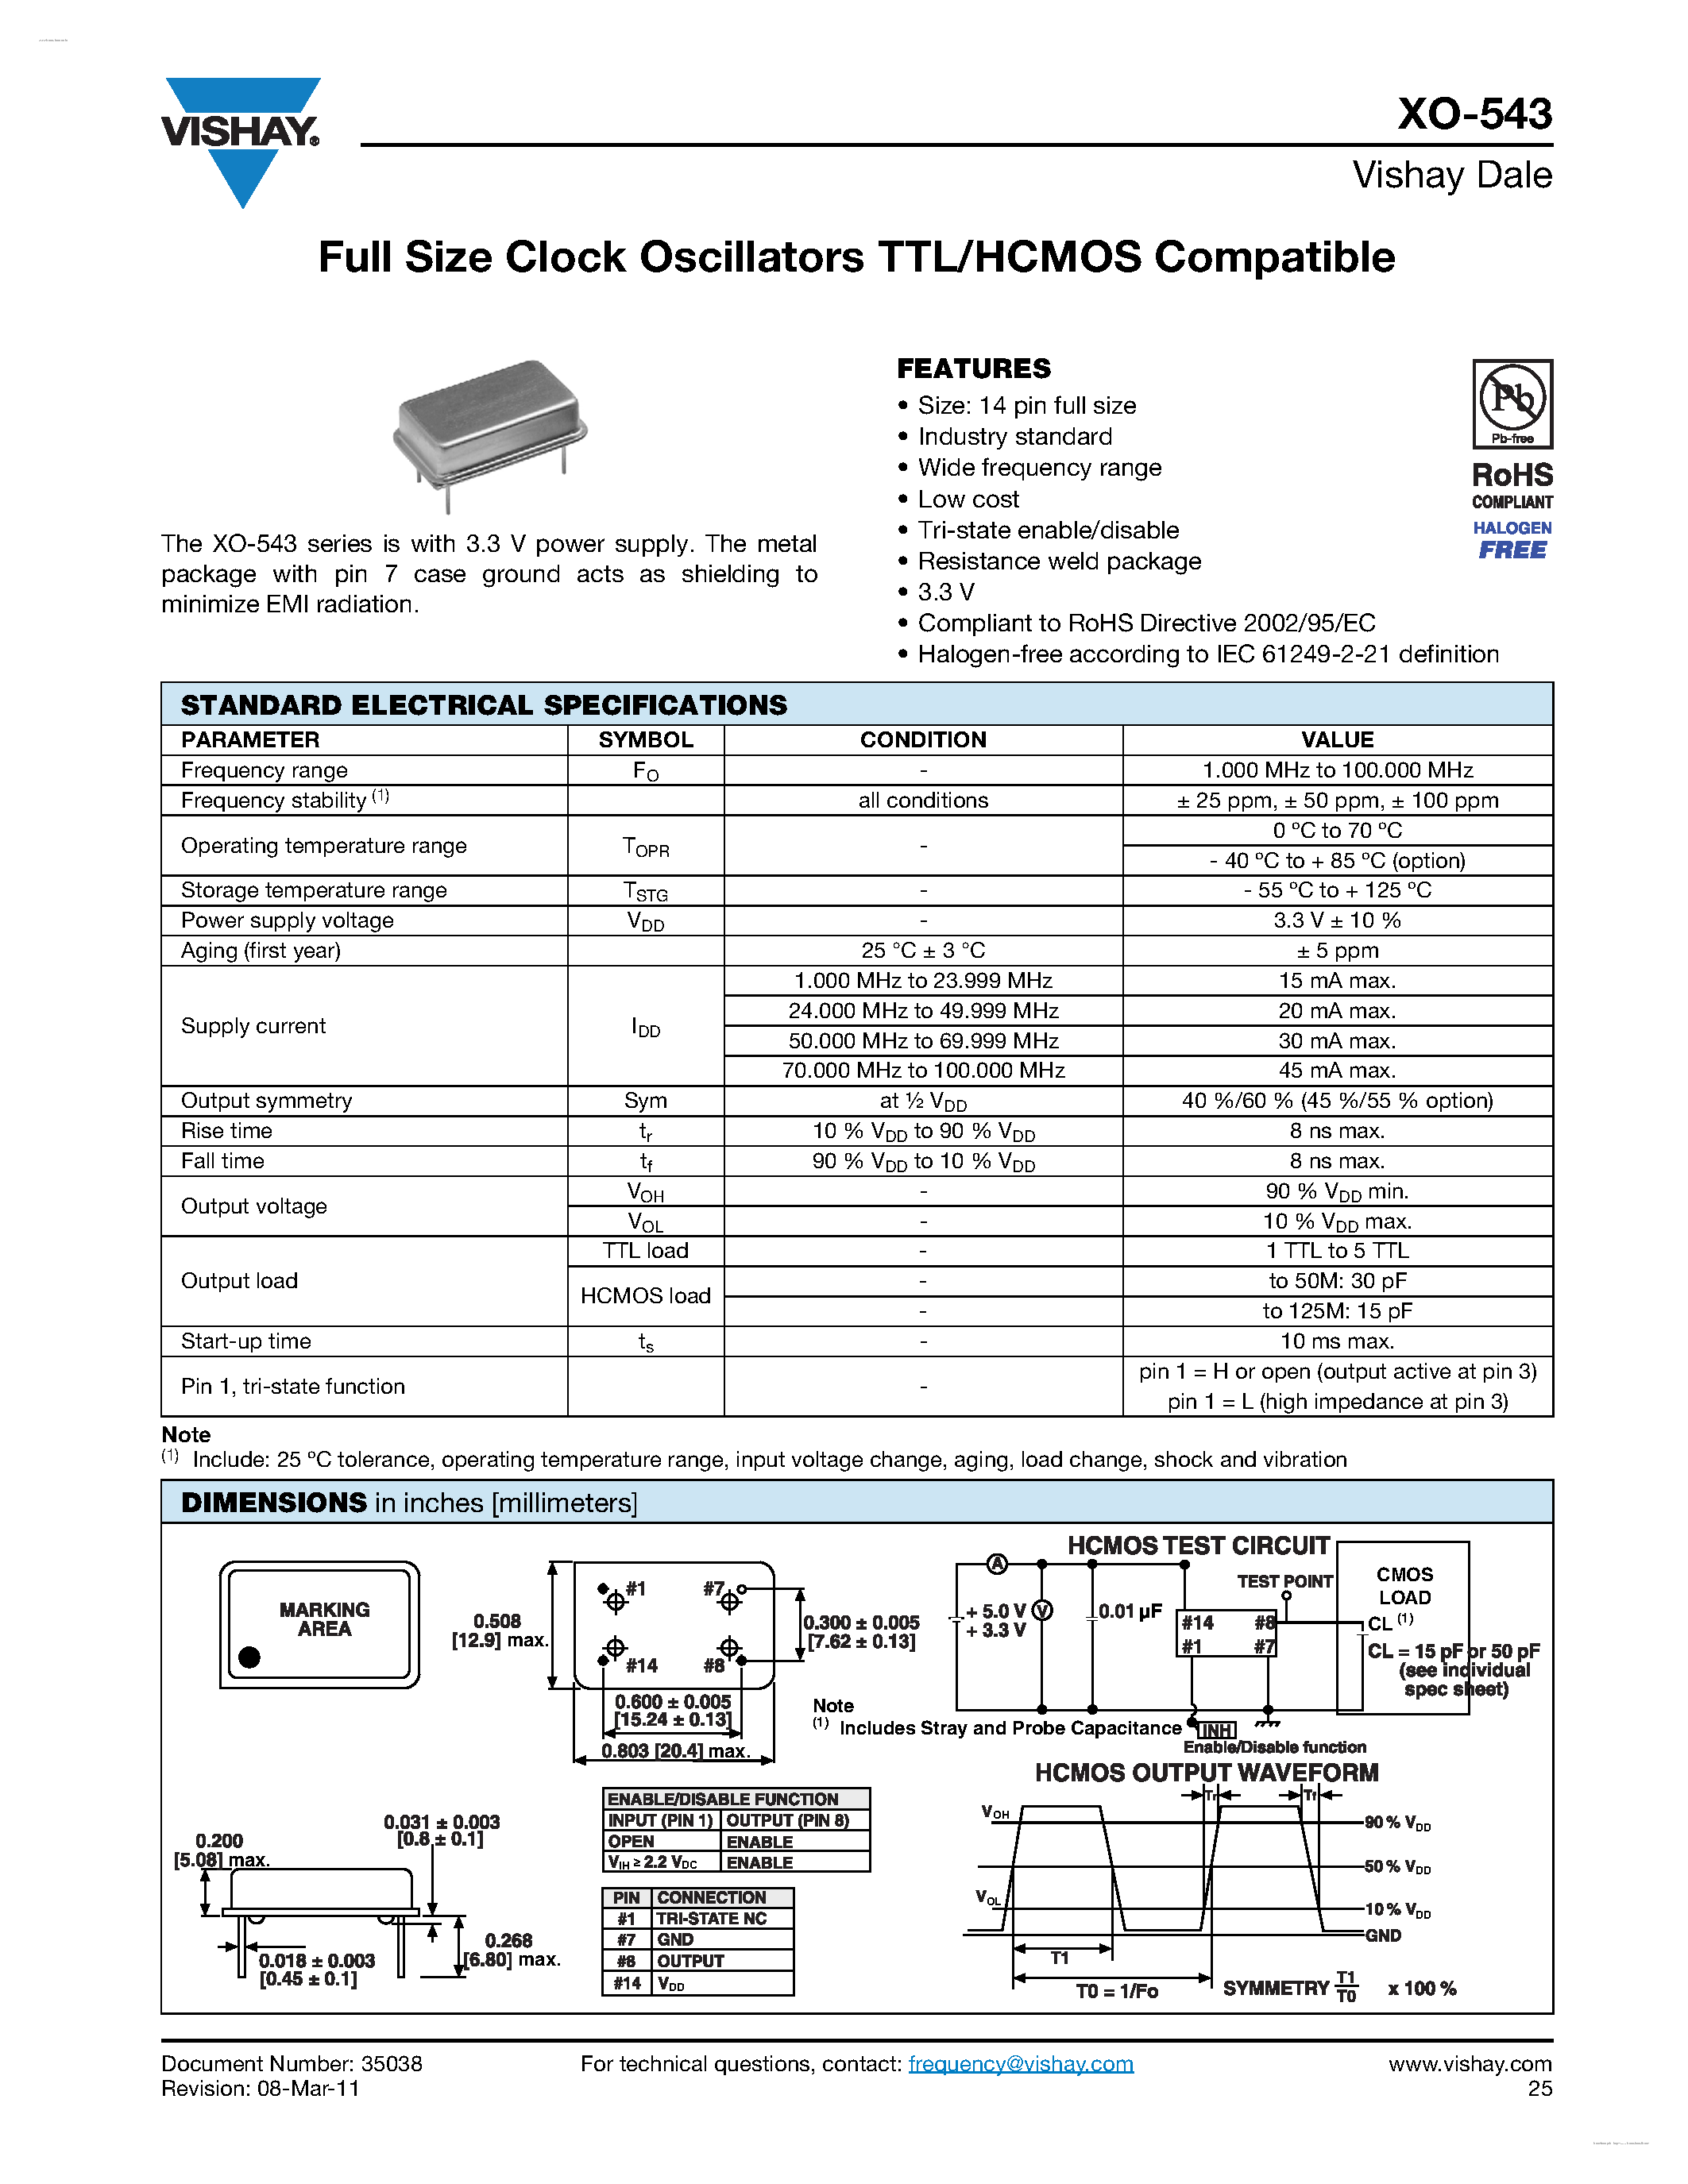 Даташит XO-543 - Full Size Clock Oscillators TTL/HCMOS Compatible страница 1